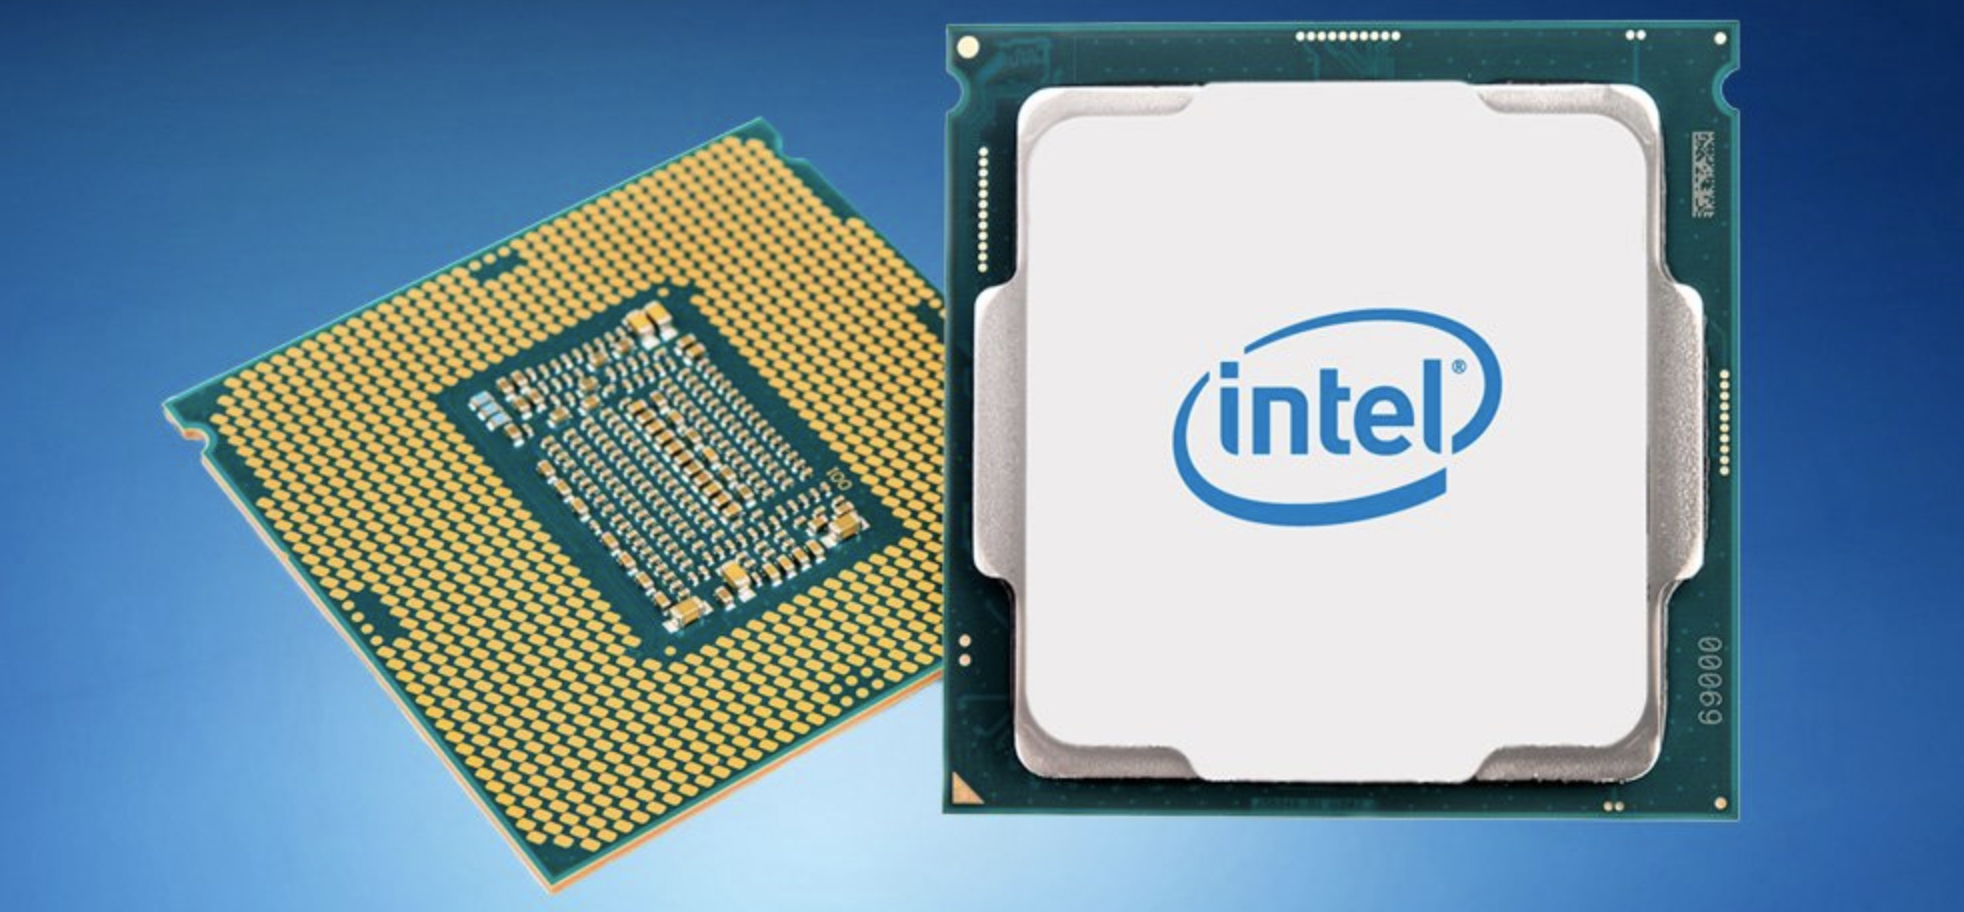 Intel 2018 için en önemli lansmanını yapıyor | Donanım Haber olay yerinde